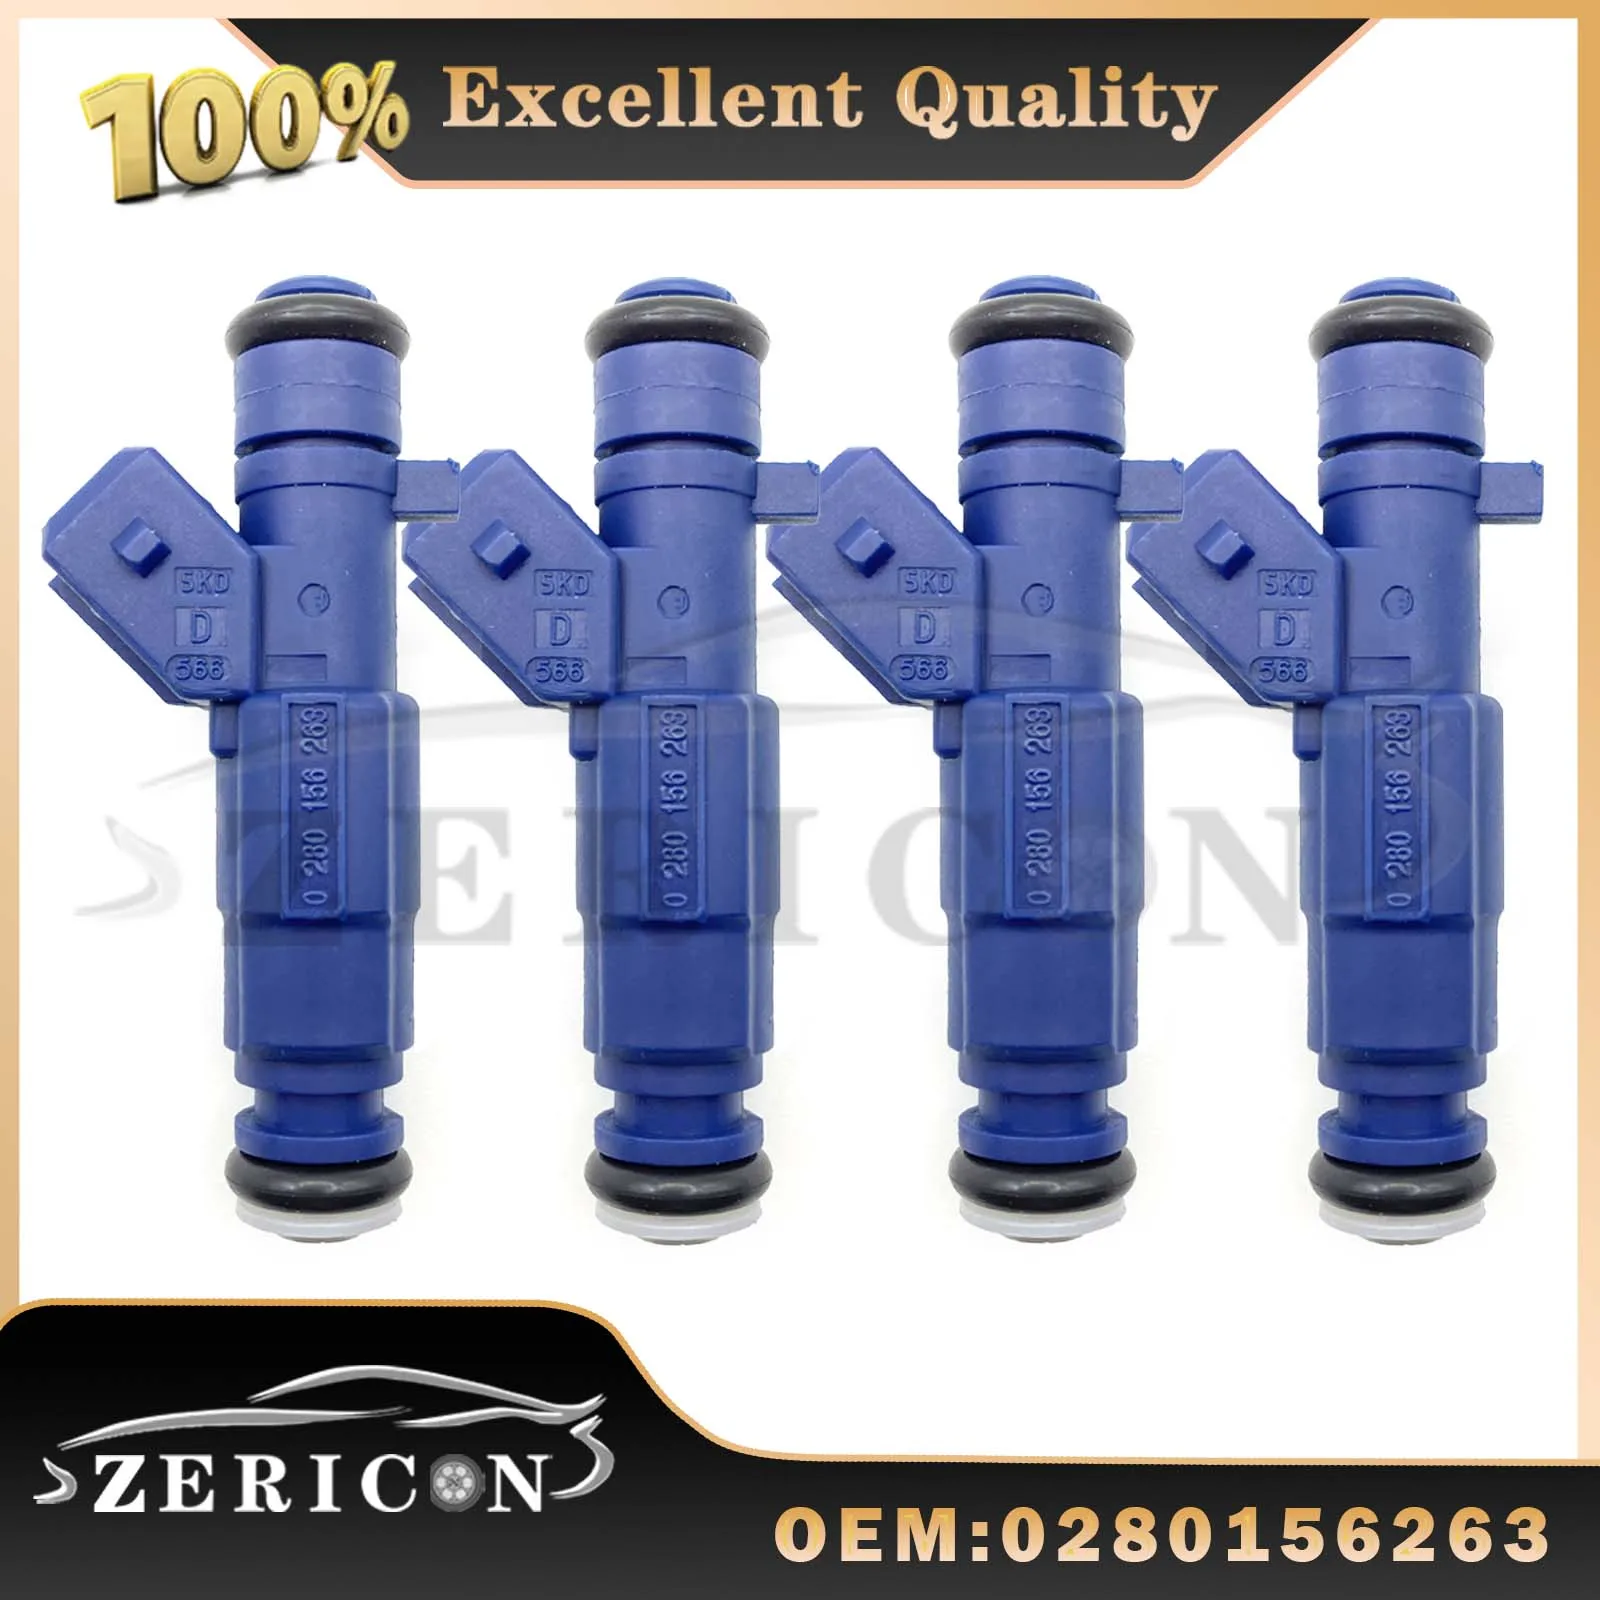 

4PCS/lots 0280156263 Auto Car Fuel Injectors Nozzle for Chery Elegant 473 For BYD OEM 371QA-1121020 Car Accessories